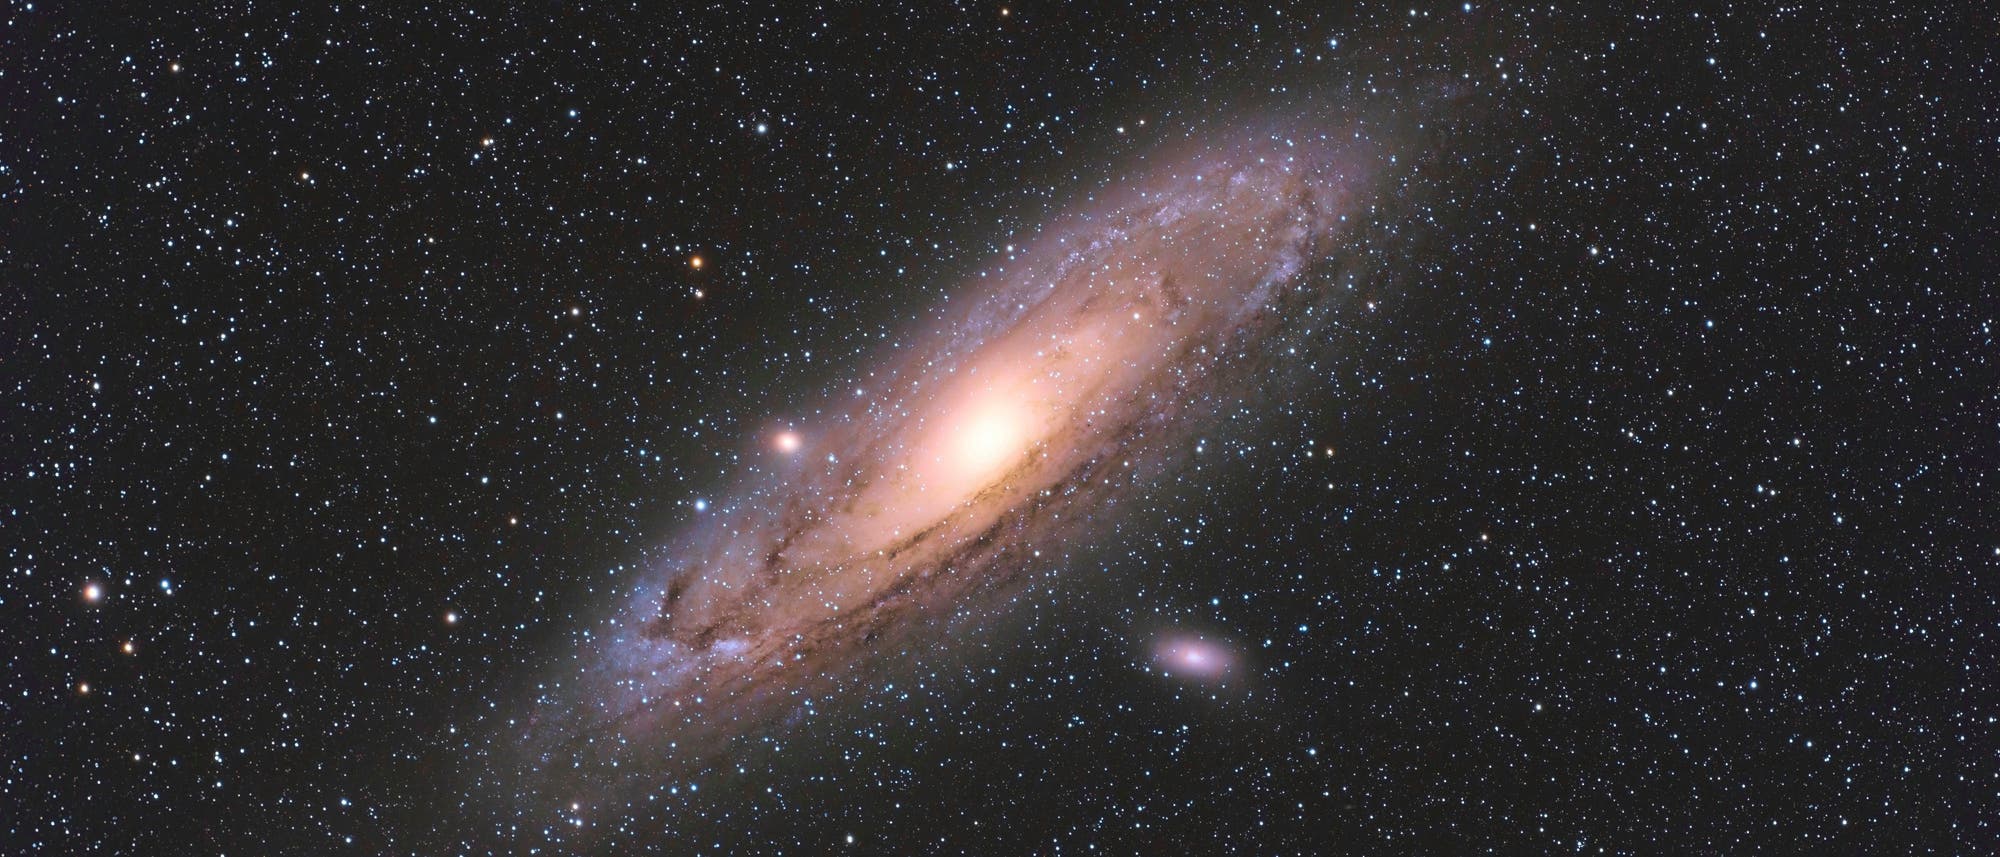 Andromedagalaxie bei Rotverschiebung